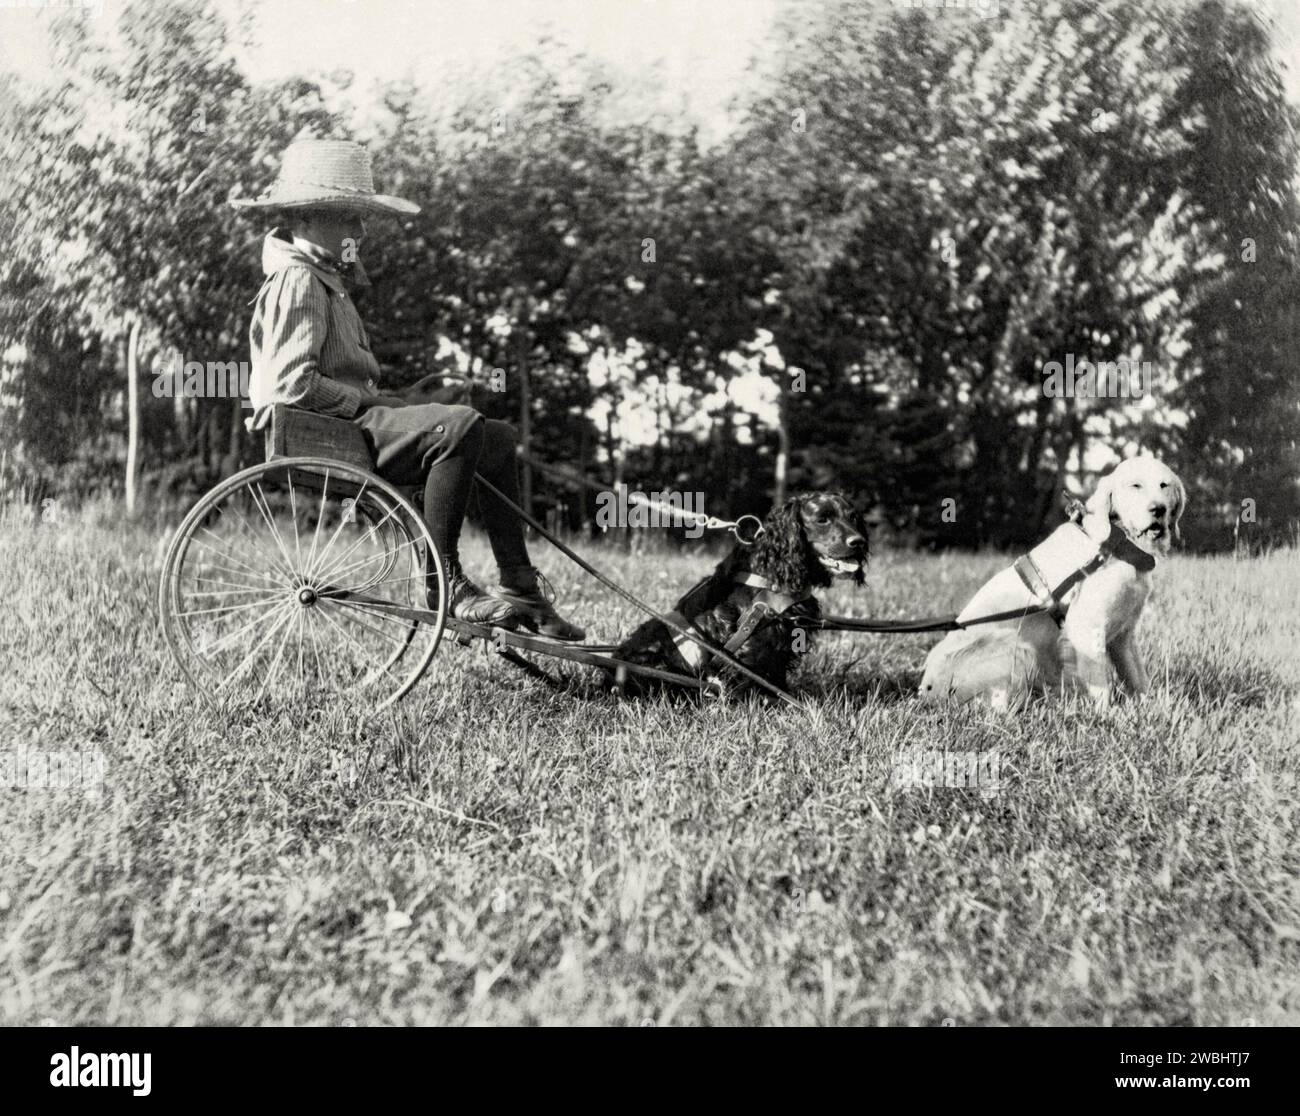 Une vieille photographie d'un garçon dans un buggy ou un chariot tiré par deux chiens à Maple Grove Farm, Rosser, Manitoba, Canada au début du 20e siècle. Dans le domaine rural, ils se reposent sous le soleil d'été. Assis sur son moyen de transport inhabituel, le garçon porte une culotte et un chapeau de paille. Ceci est tiré d'un album de photos de début. Banque D'Images